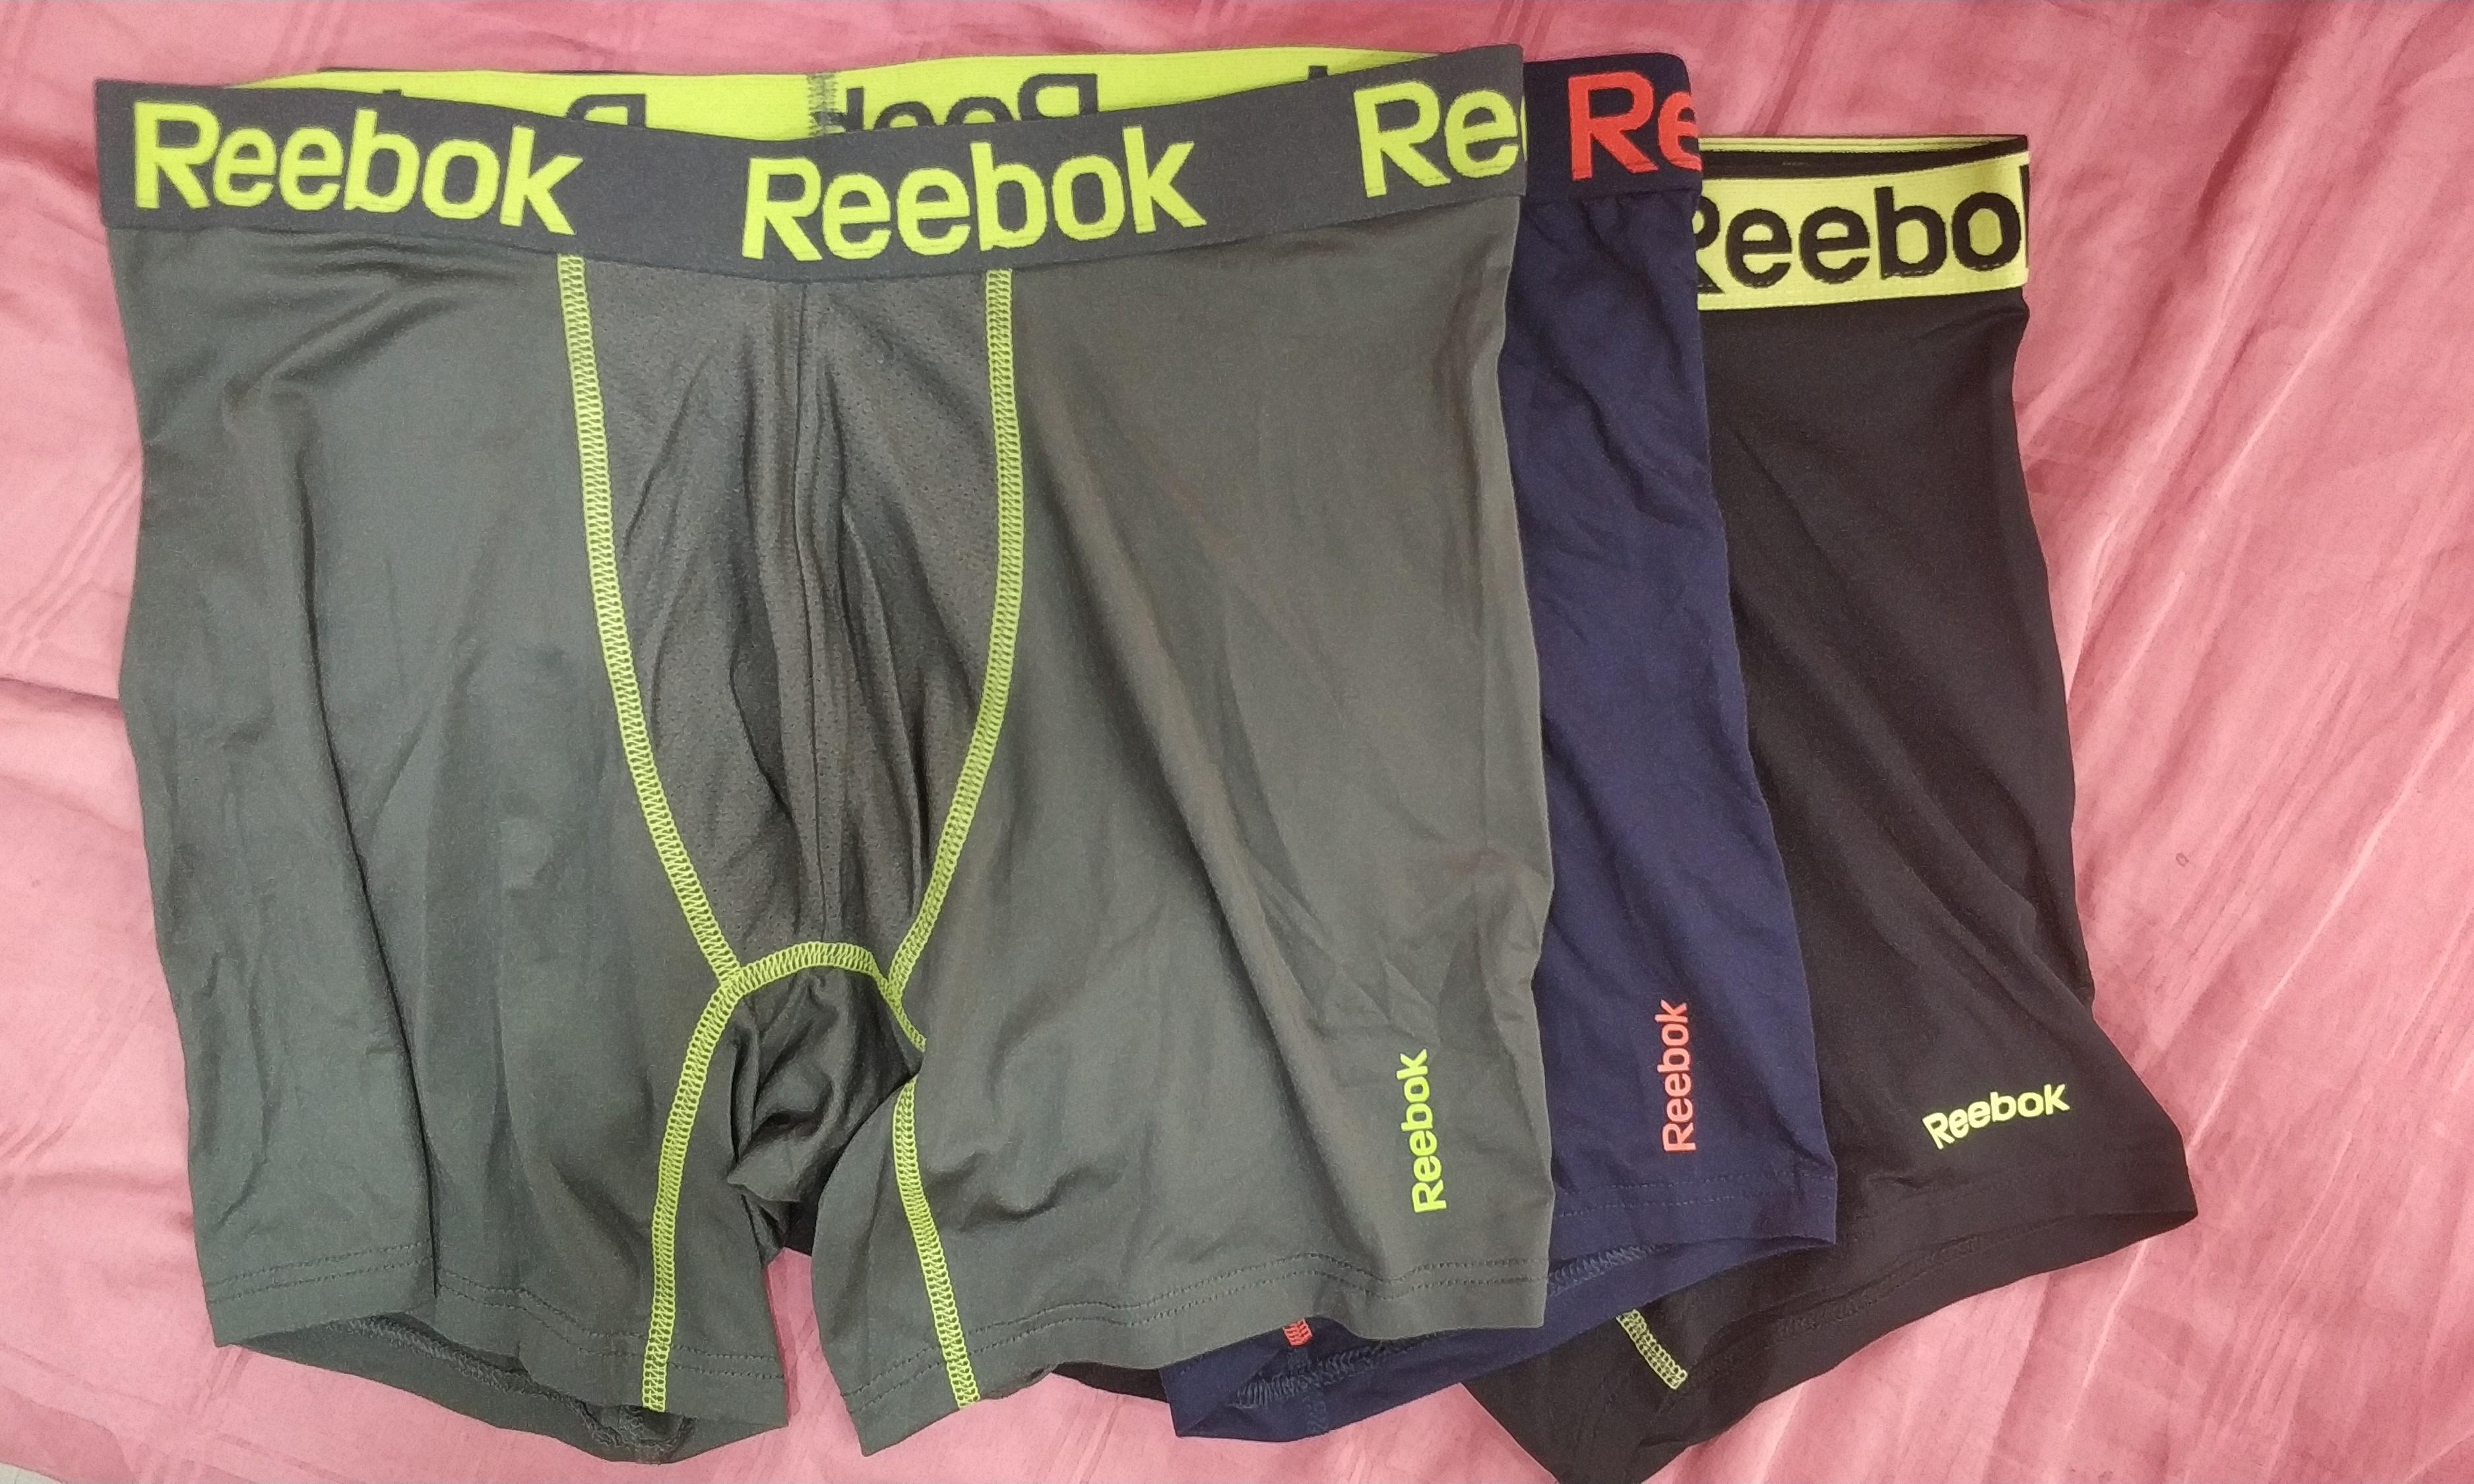 BNIB Reebok Performance Underwear, Men's Fashion, Bottoms, New